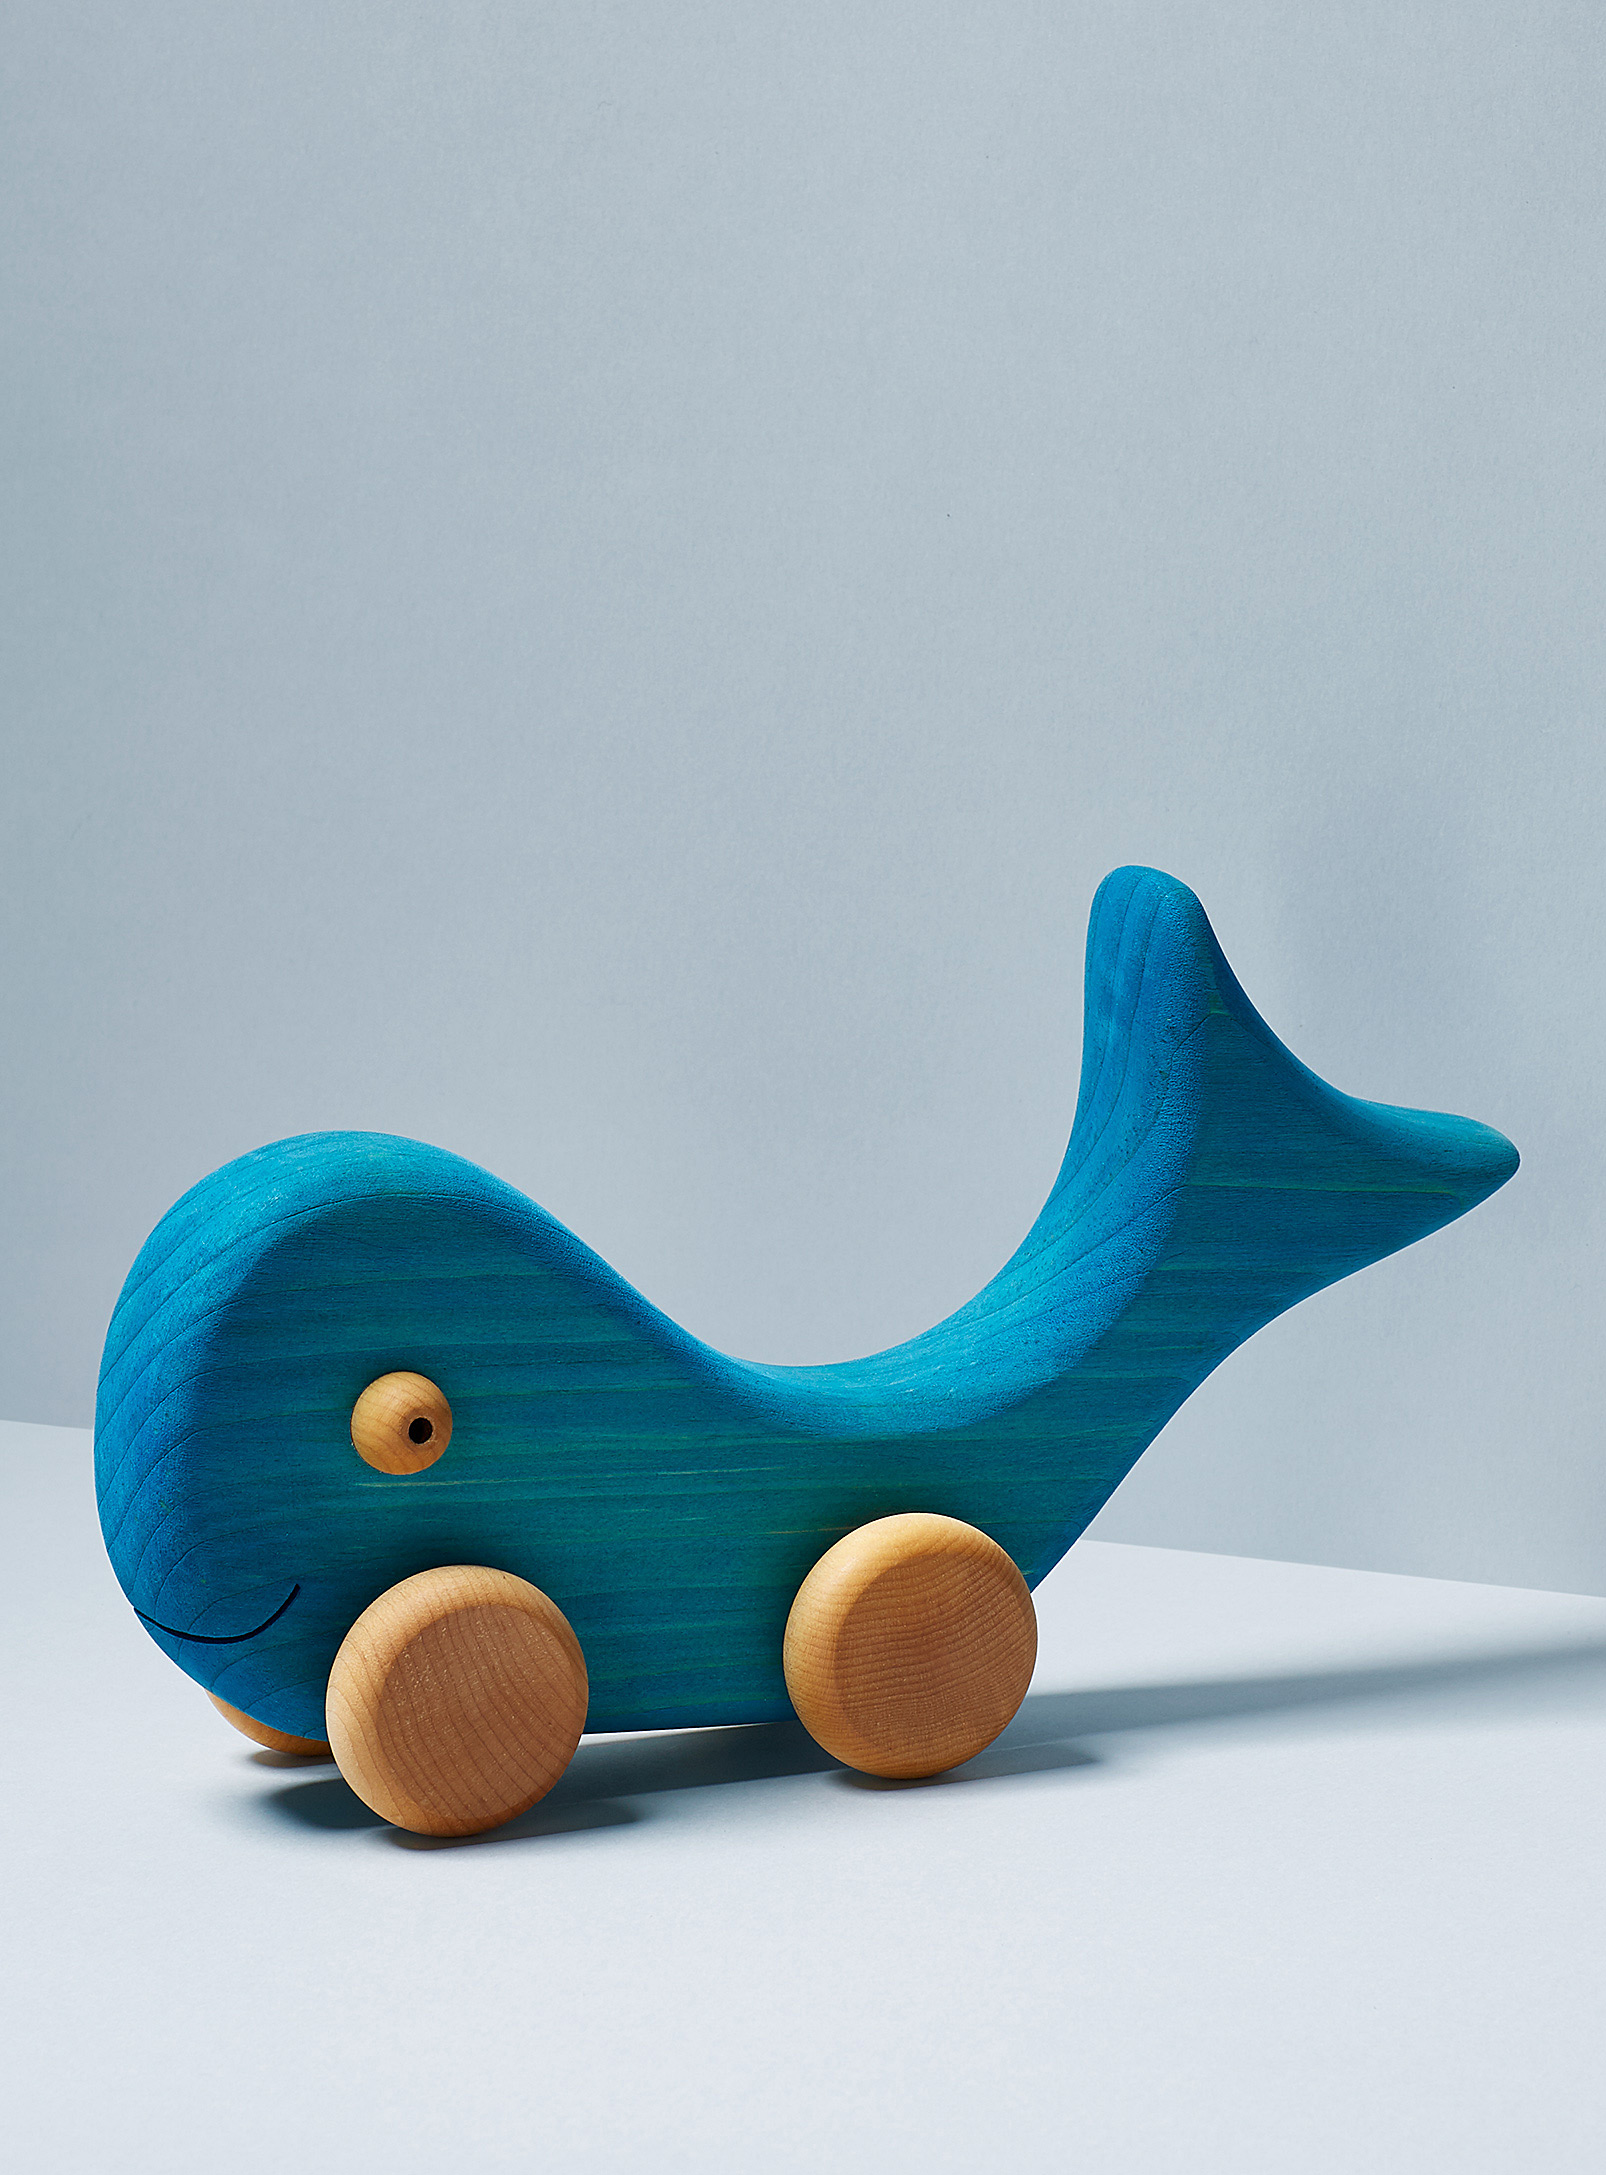 Atelier cheval de bois - Blue whale